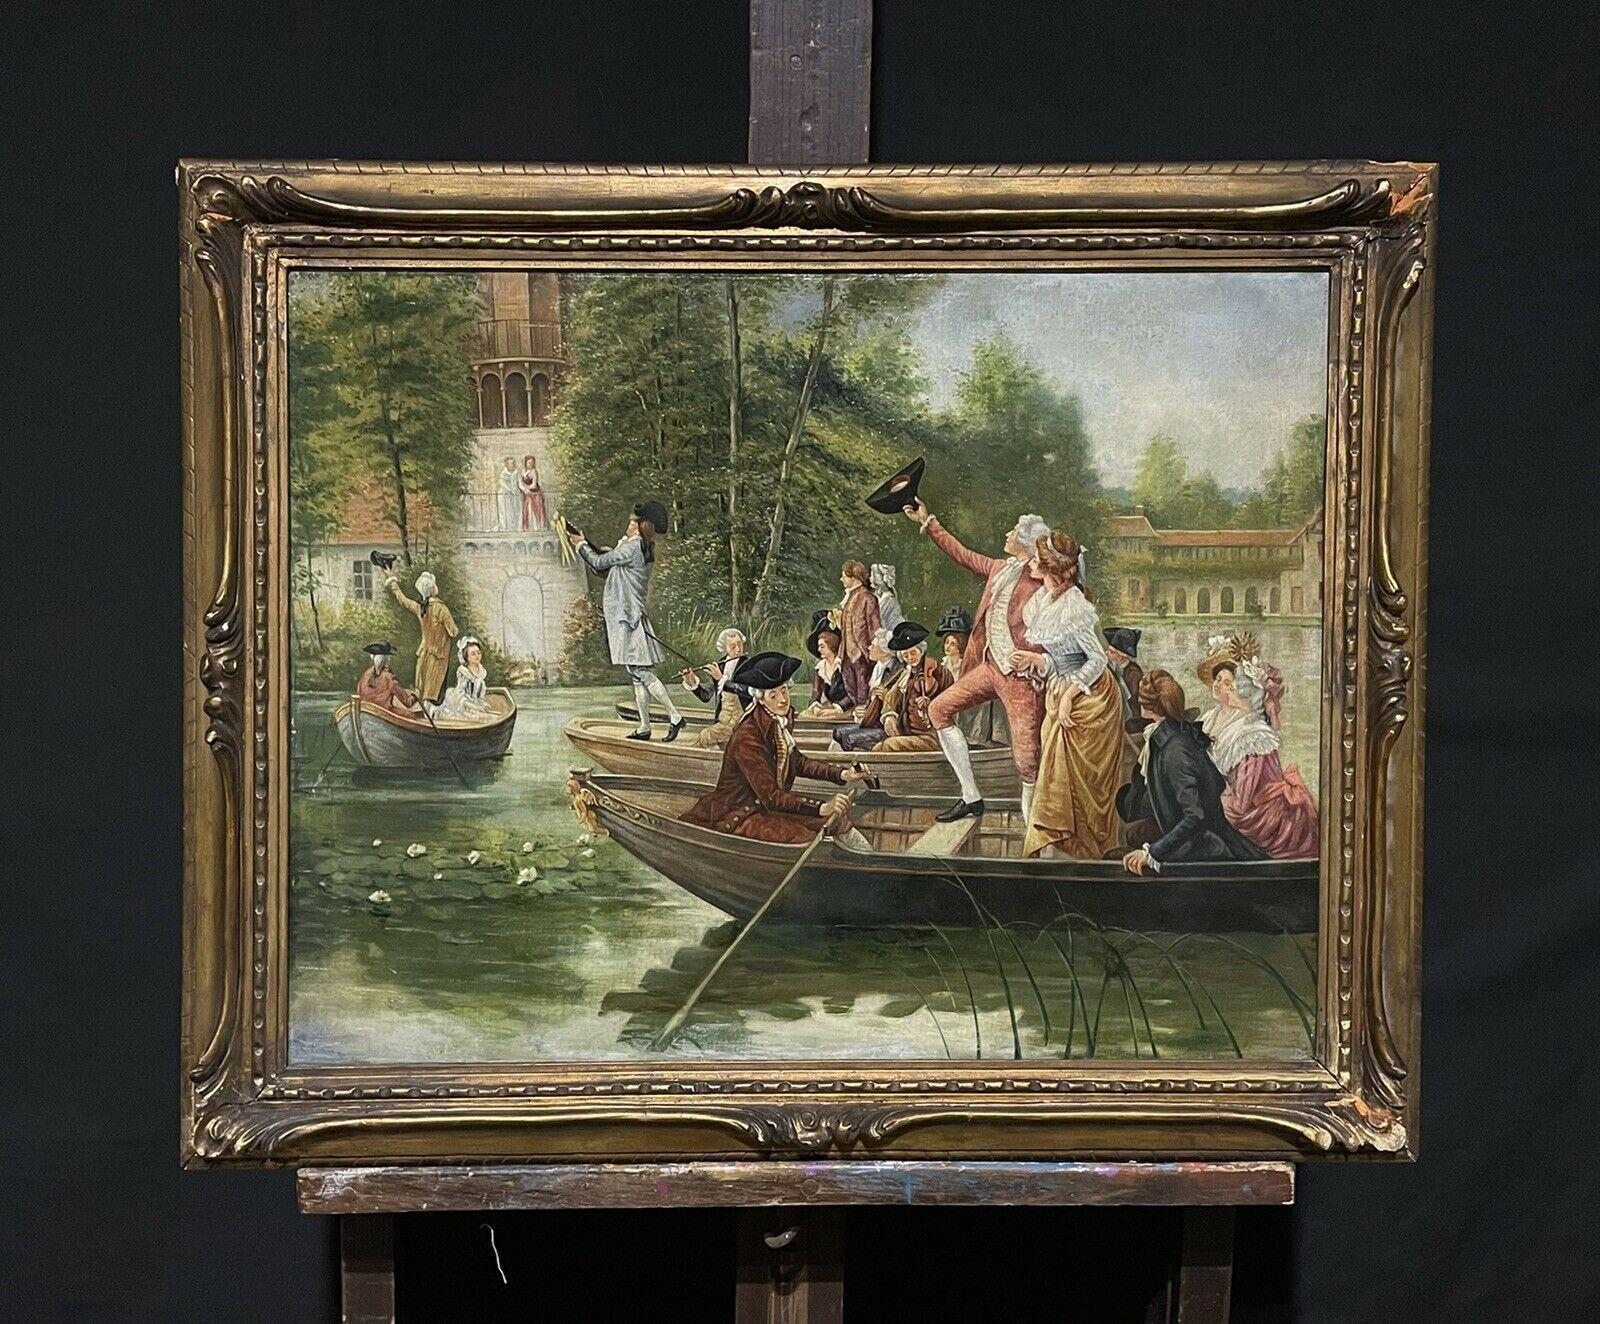 Anciennes et élégantes figures de bateaux lors d'une fête navale à côté de grands bâtiments - Painting de French Rococo